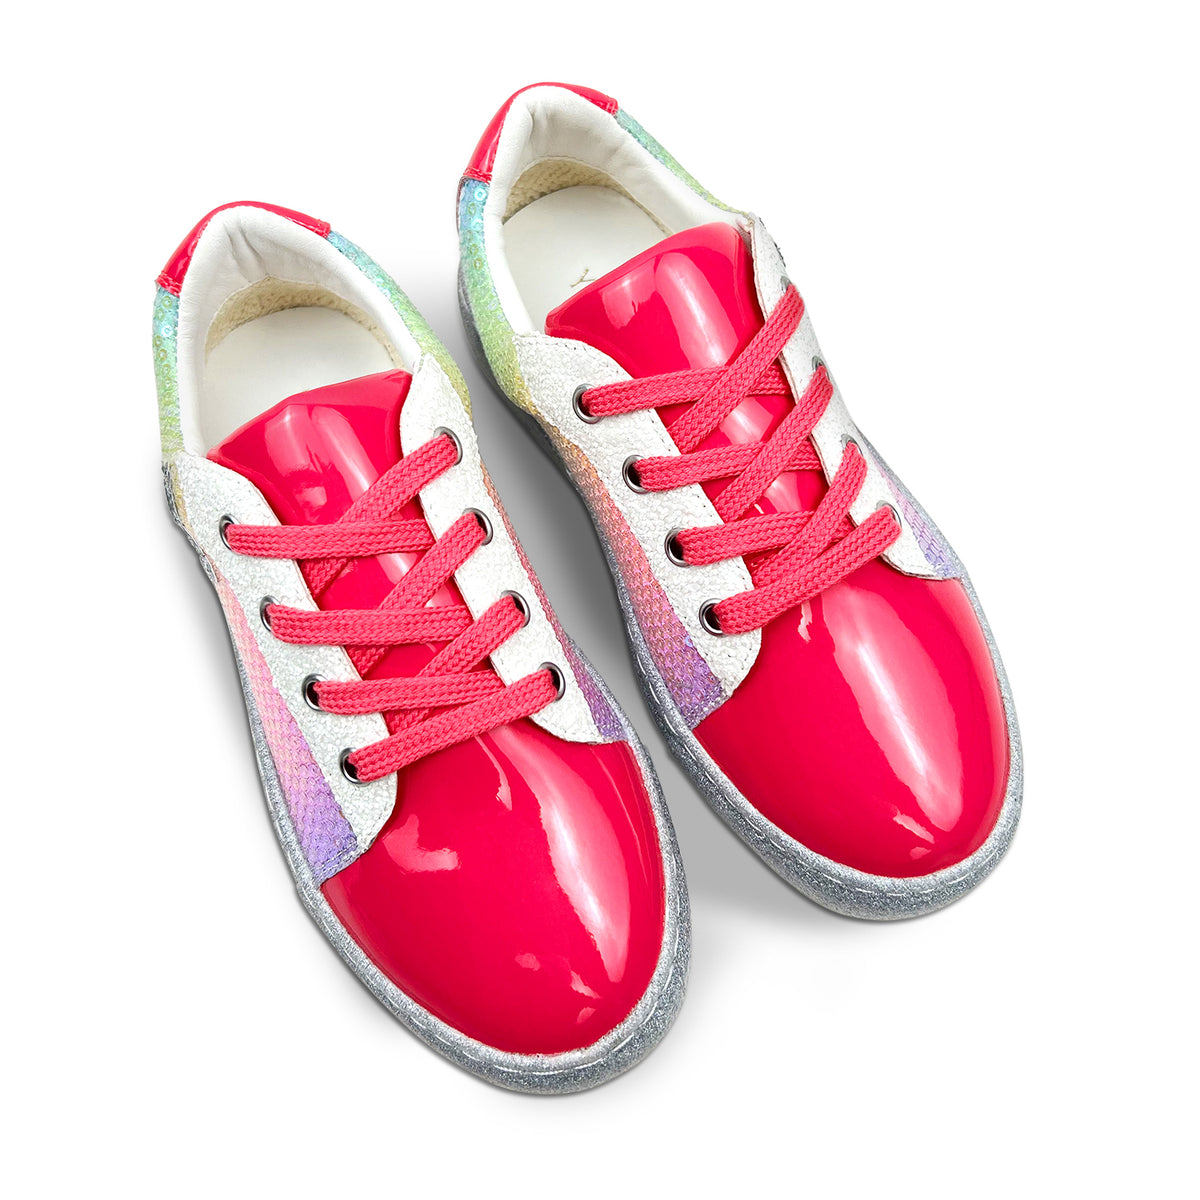 Miss Harper Sneaker in Pink Sequin - Kids